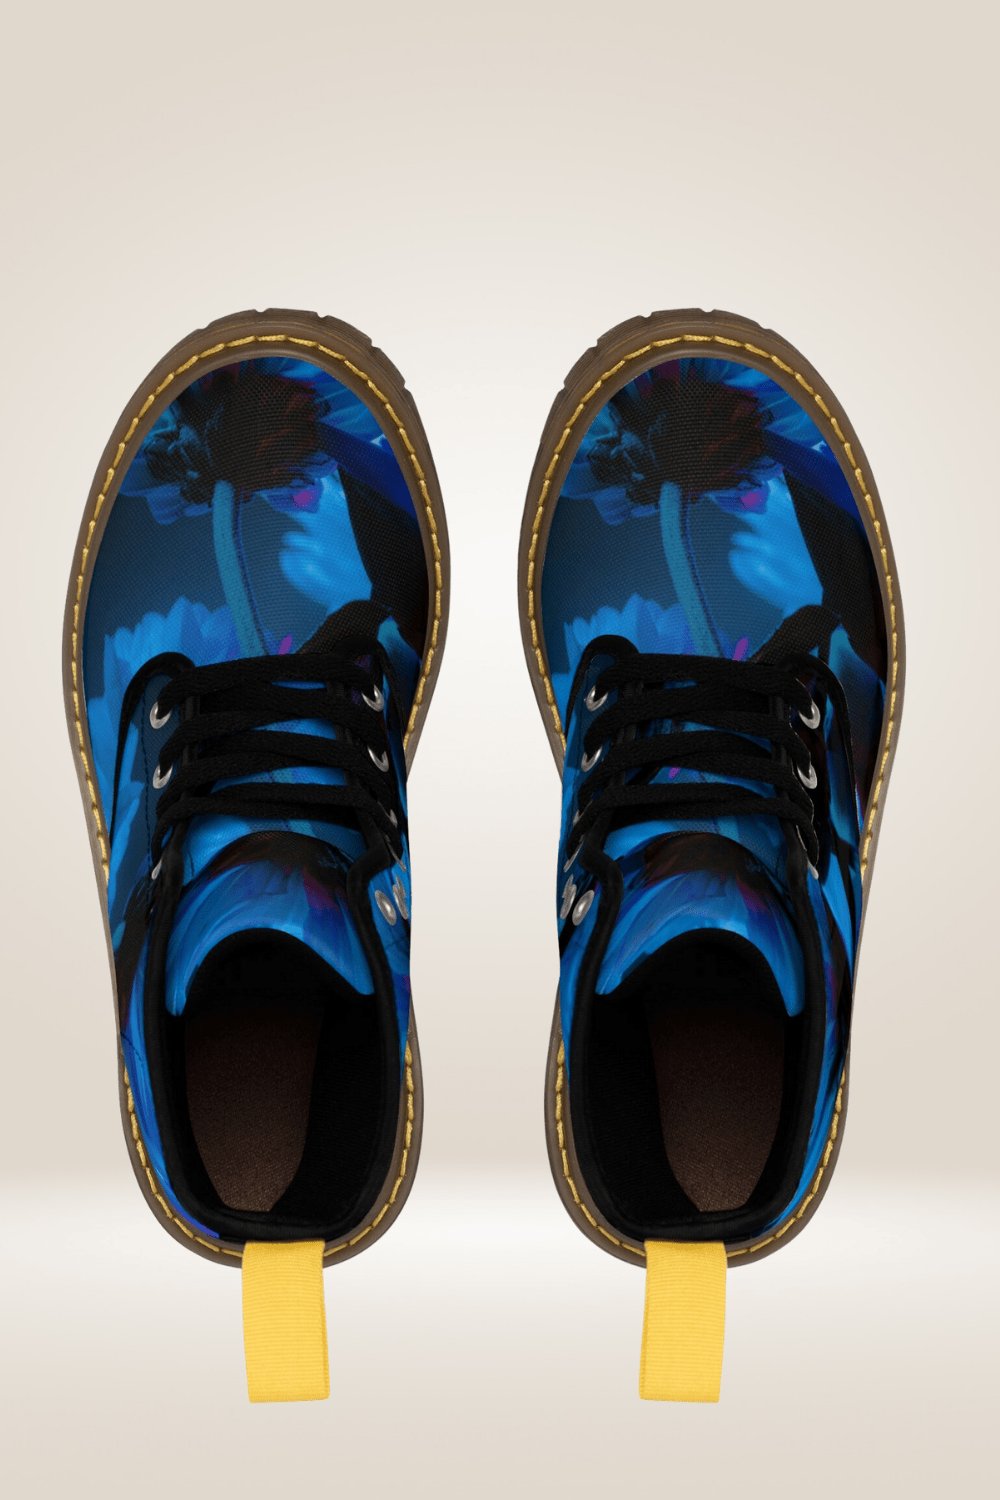 Blue Flower Print Combat Boots - Brown Sole - TGC Boutique - Boots